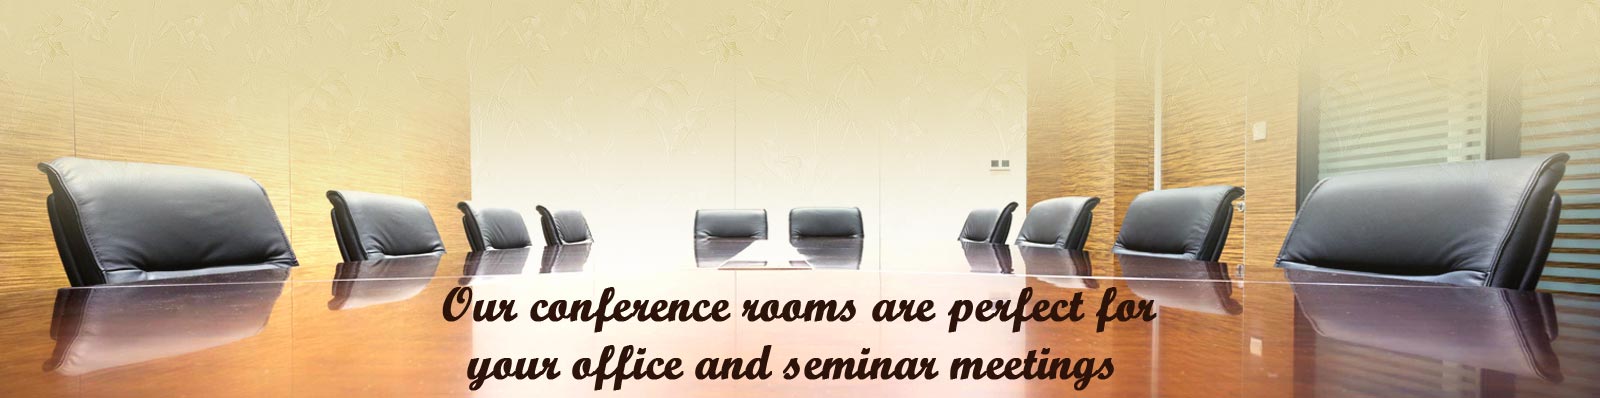 Office Meetings/Seminars Slide